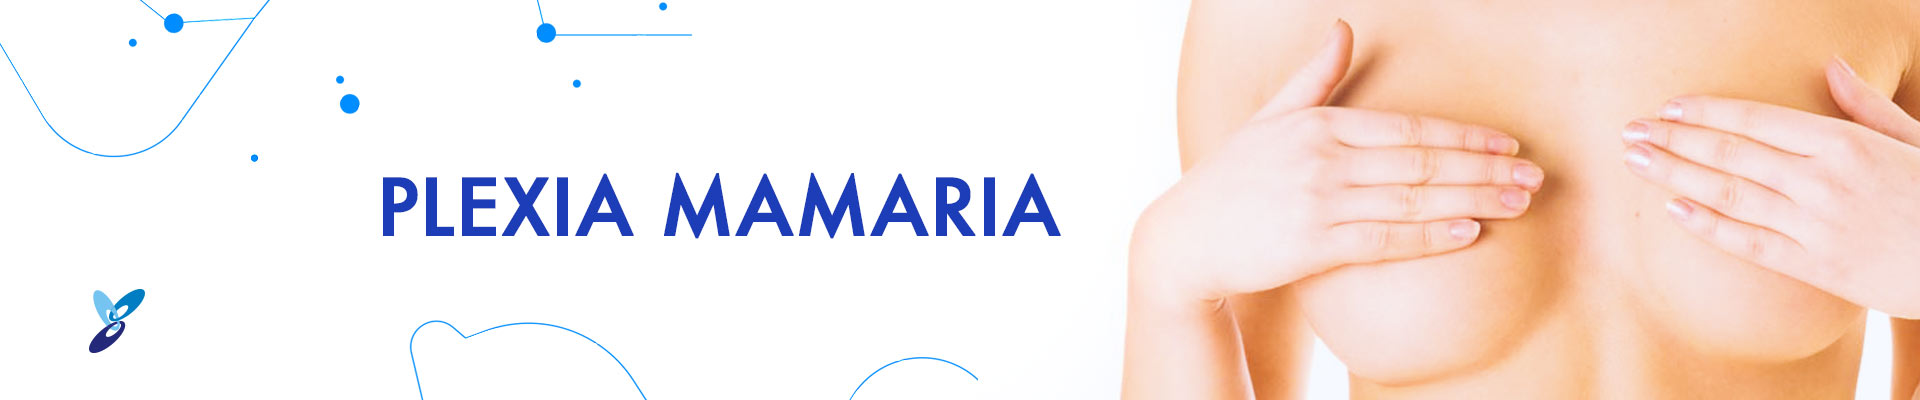 banner-plexia-mamaria